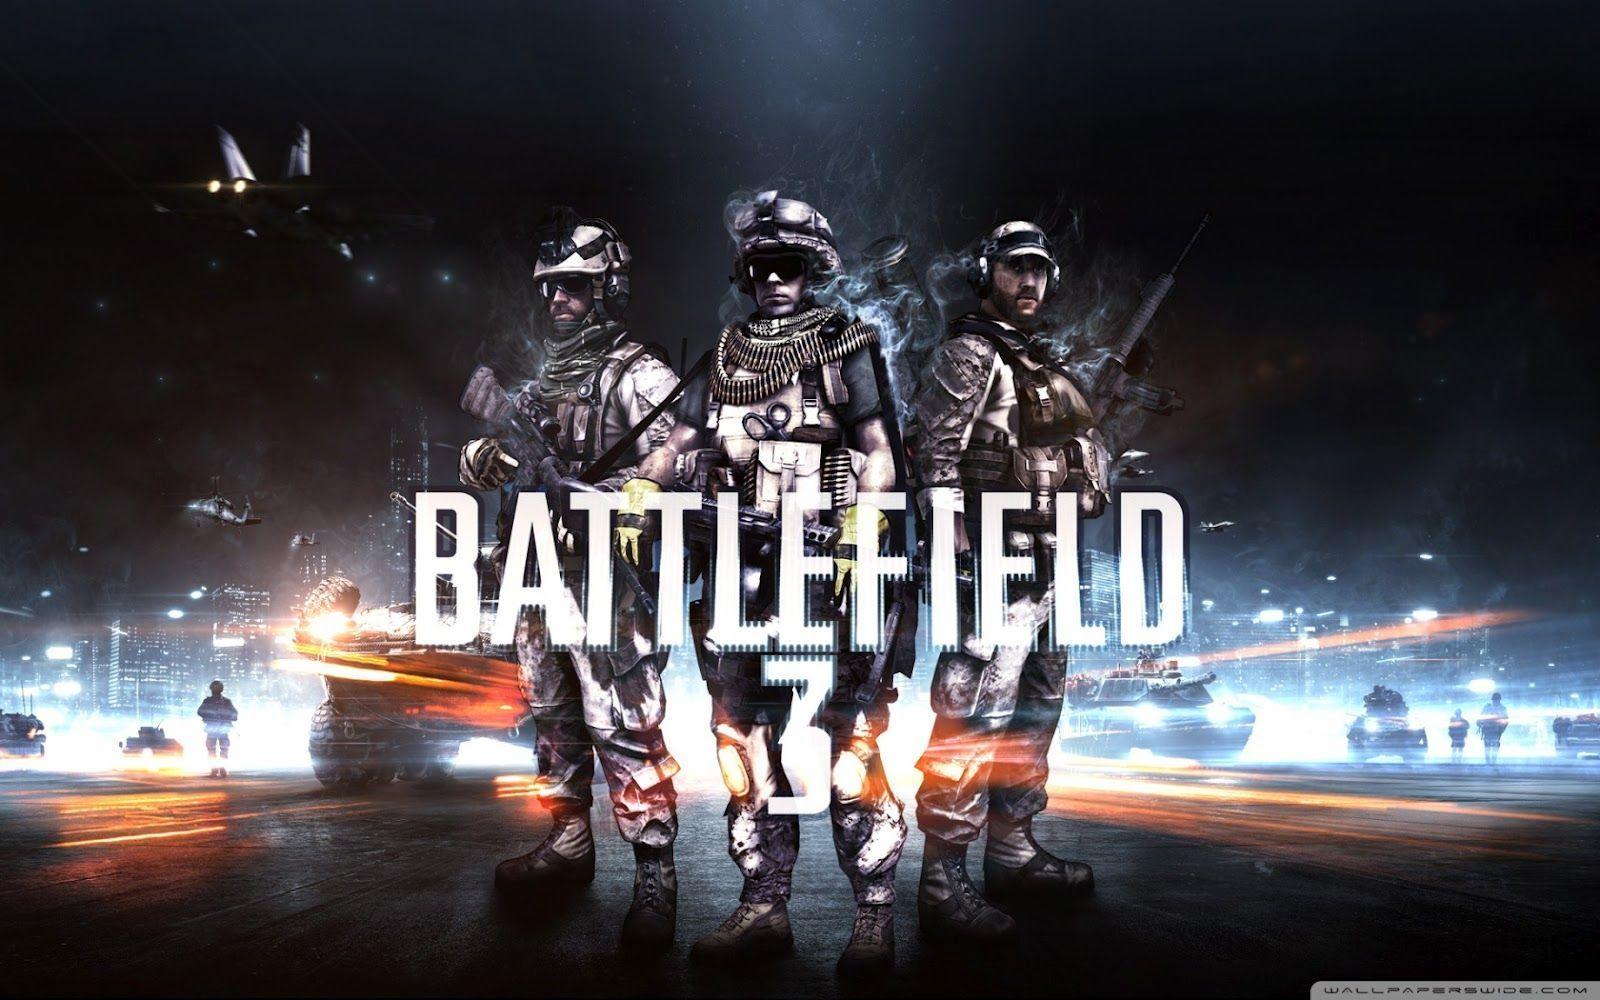 Battlefield 3 Hi Res Wallpaper. PicsWallpaper